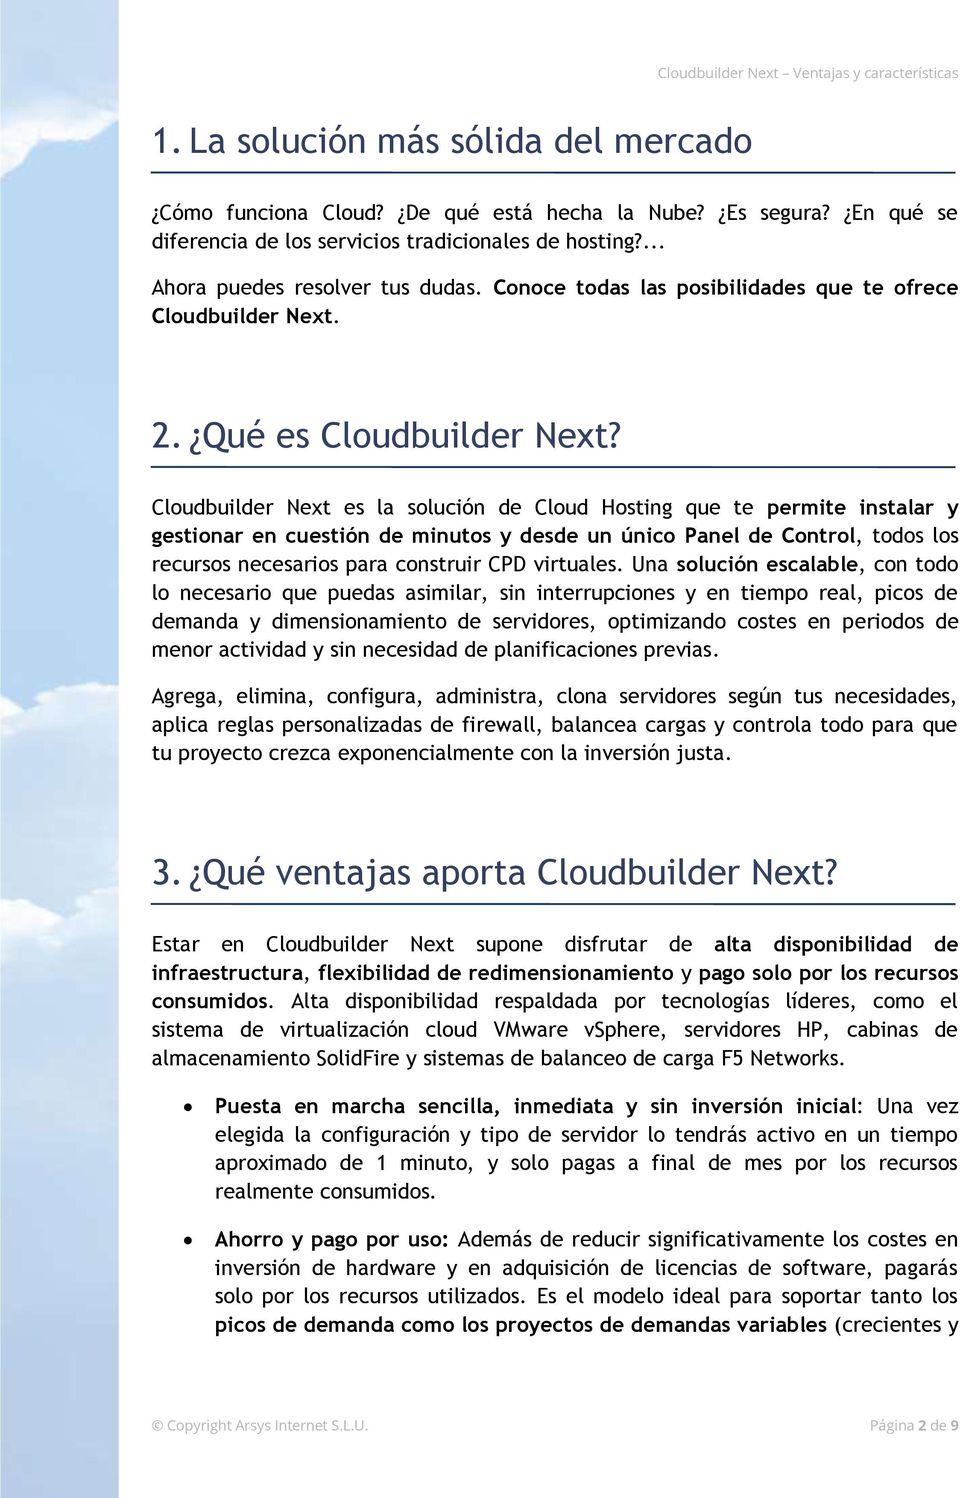 Cloudbuilder Next es la solución de Cloud Hosting que te permite instalar y gestionar en cuestión de minutos y desde un único Panel de Control, todos los recursos necesarios para construir CPD